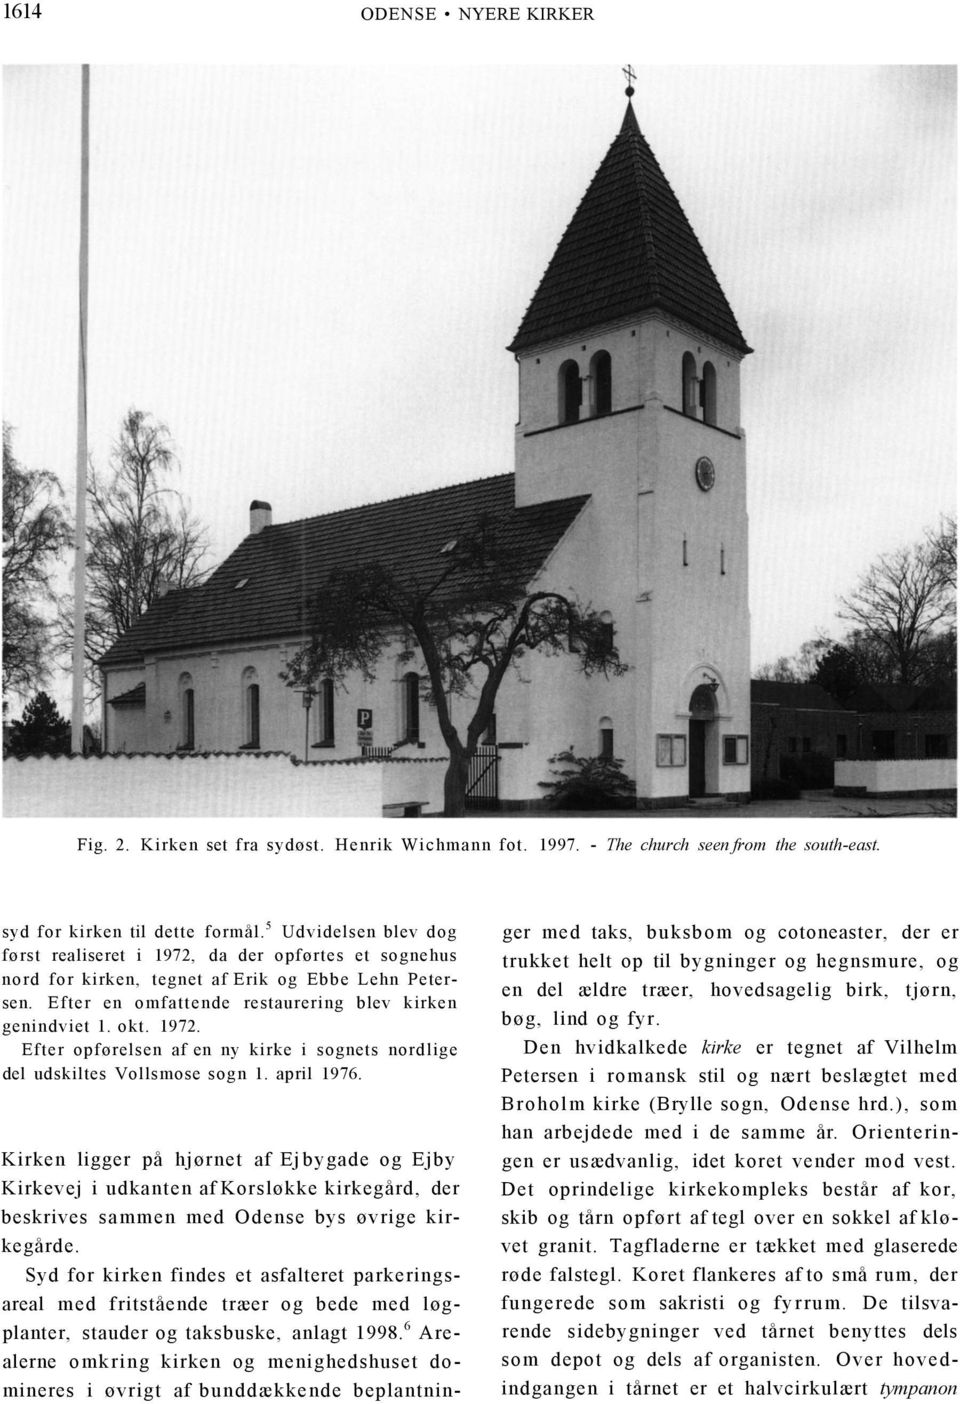 april 1976. Kirken ligger på hjørnet af Ej bygade og Ejby Kirkevej i udkanten af Korsløkke kirkegård, der beskrives sammen med Odense bys øvrige kirkegårde.